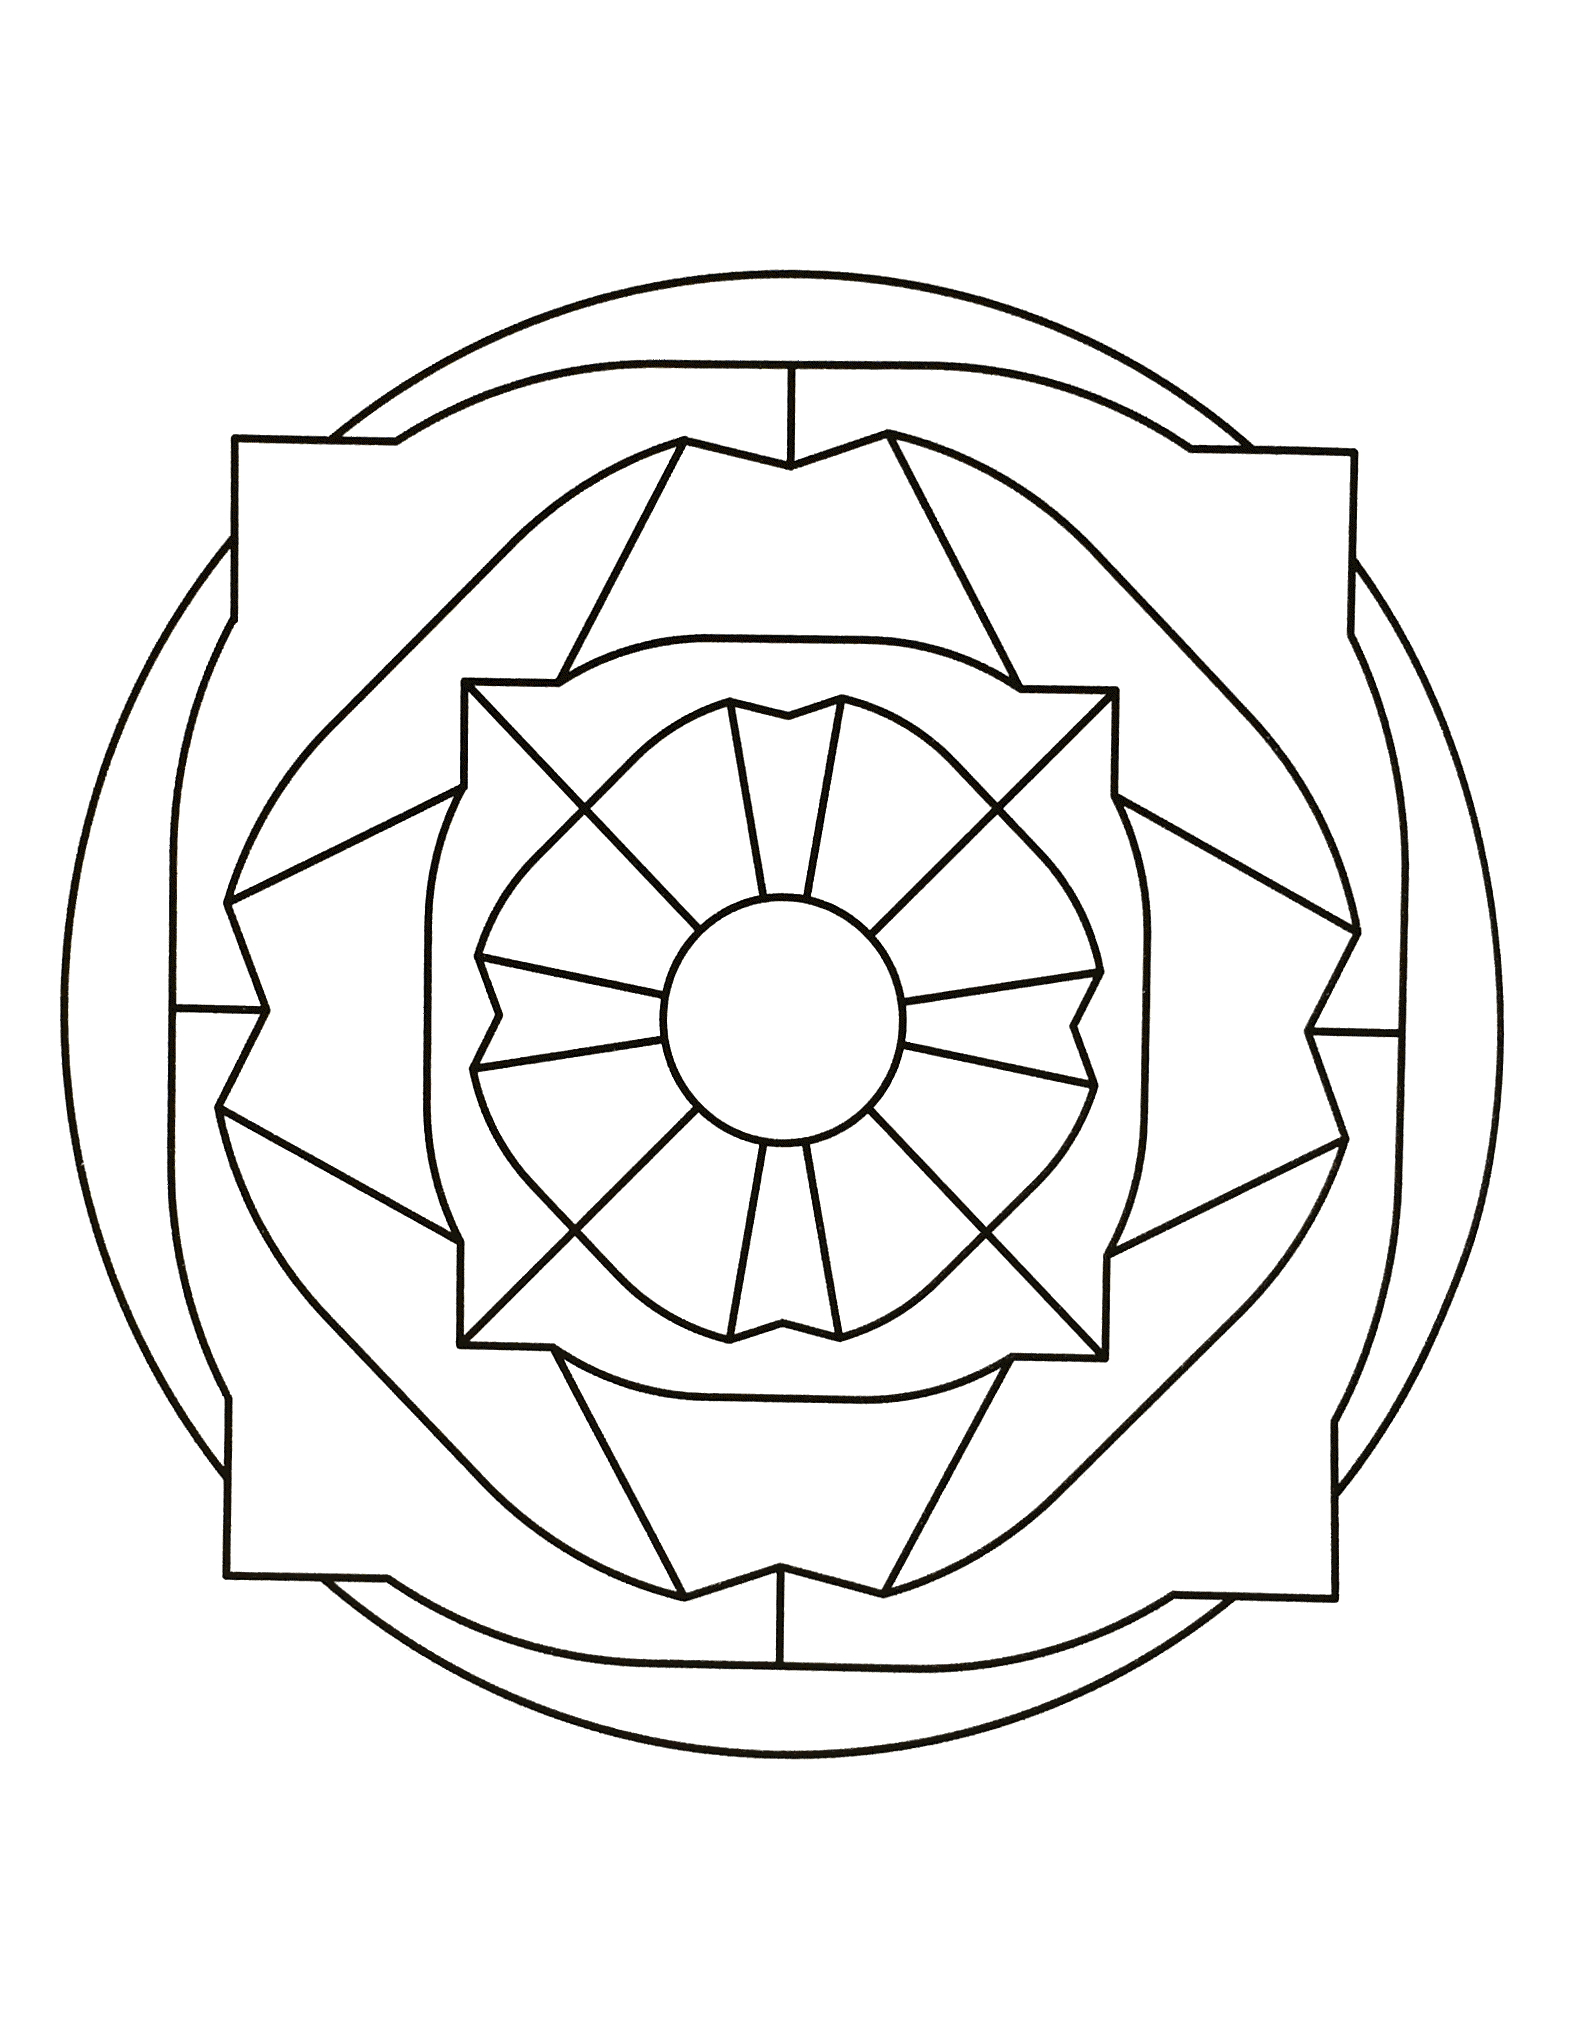 Superbe mandala avec différentes formes géométriques comme des triangles autour, un carré ainsi qu'un cercle au centre de celui-ci.